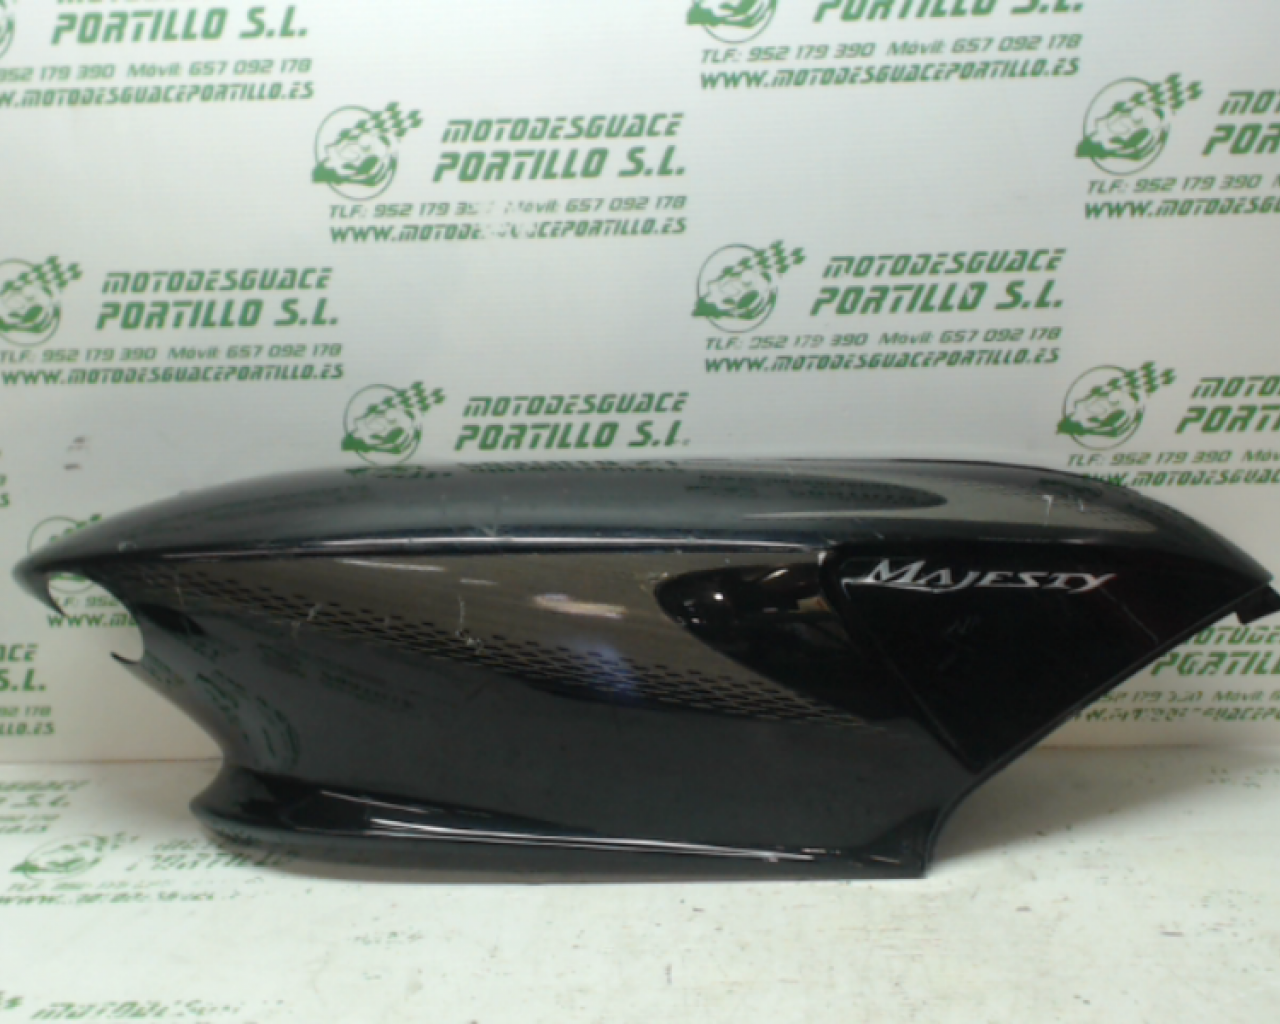 Carcasa lateral trasera derecha Yamaha Majesty 125 (2005-2007)